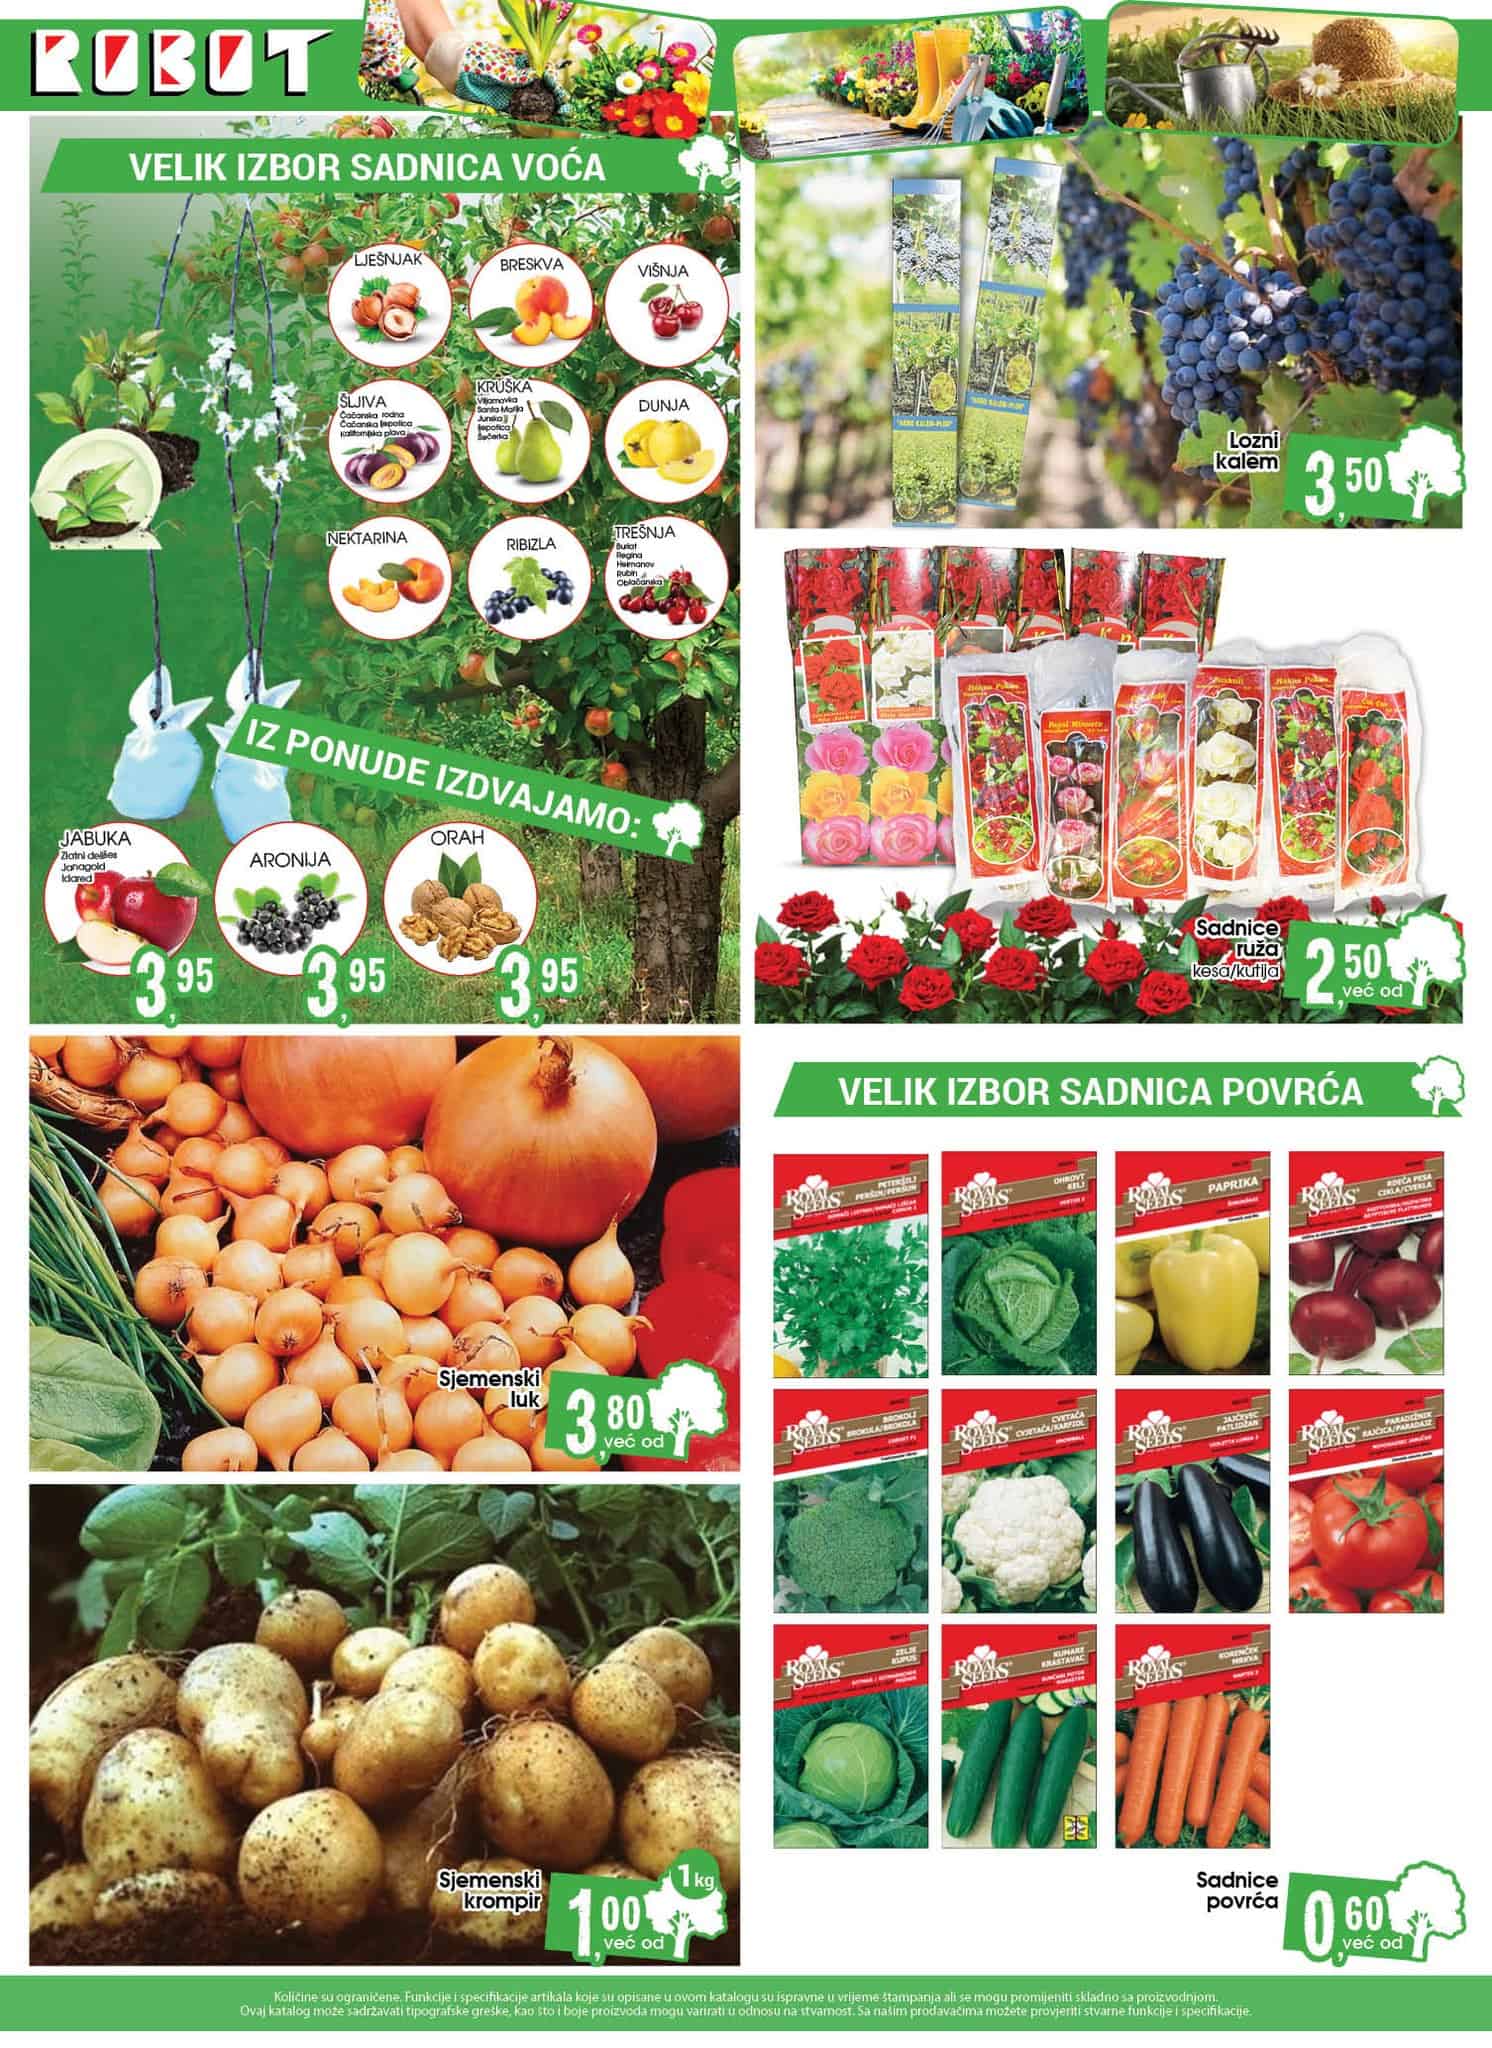 Robot katalog donosi veliki izbor sadnica voca i povrca. Sjemenski luk kupite po cijeni od 3,80 KM, sjemenski krompir od 1 KM!